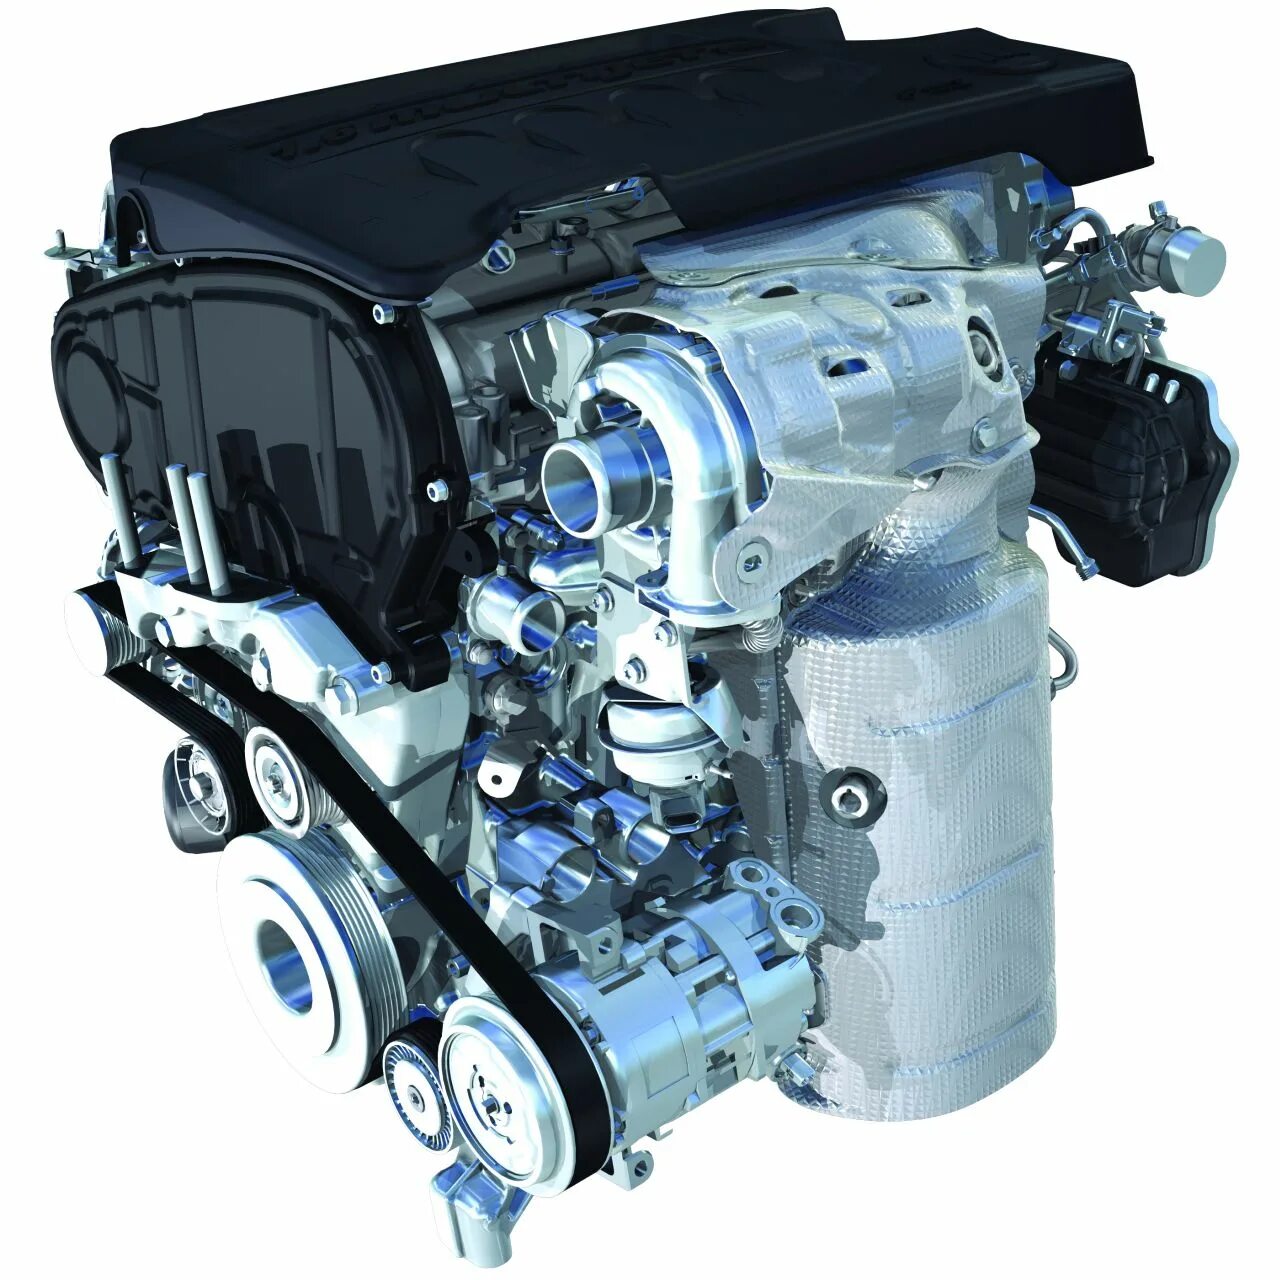 Дизель мультиджет 1.3. Fiat motore 1.9 Multijet 16v. Fiat Multijet 120 дизель. Фиат Добло 1.6 дизель. Fiat 1,3 JTD.